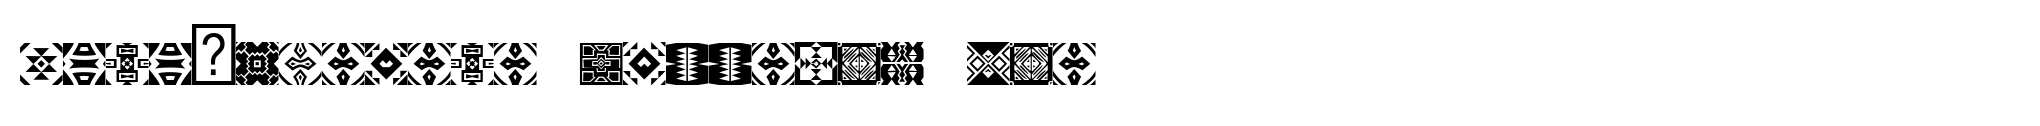 Zulu-Ndebele Patterns One image